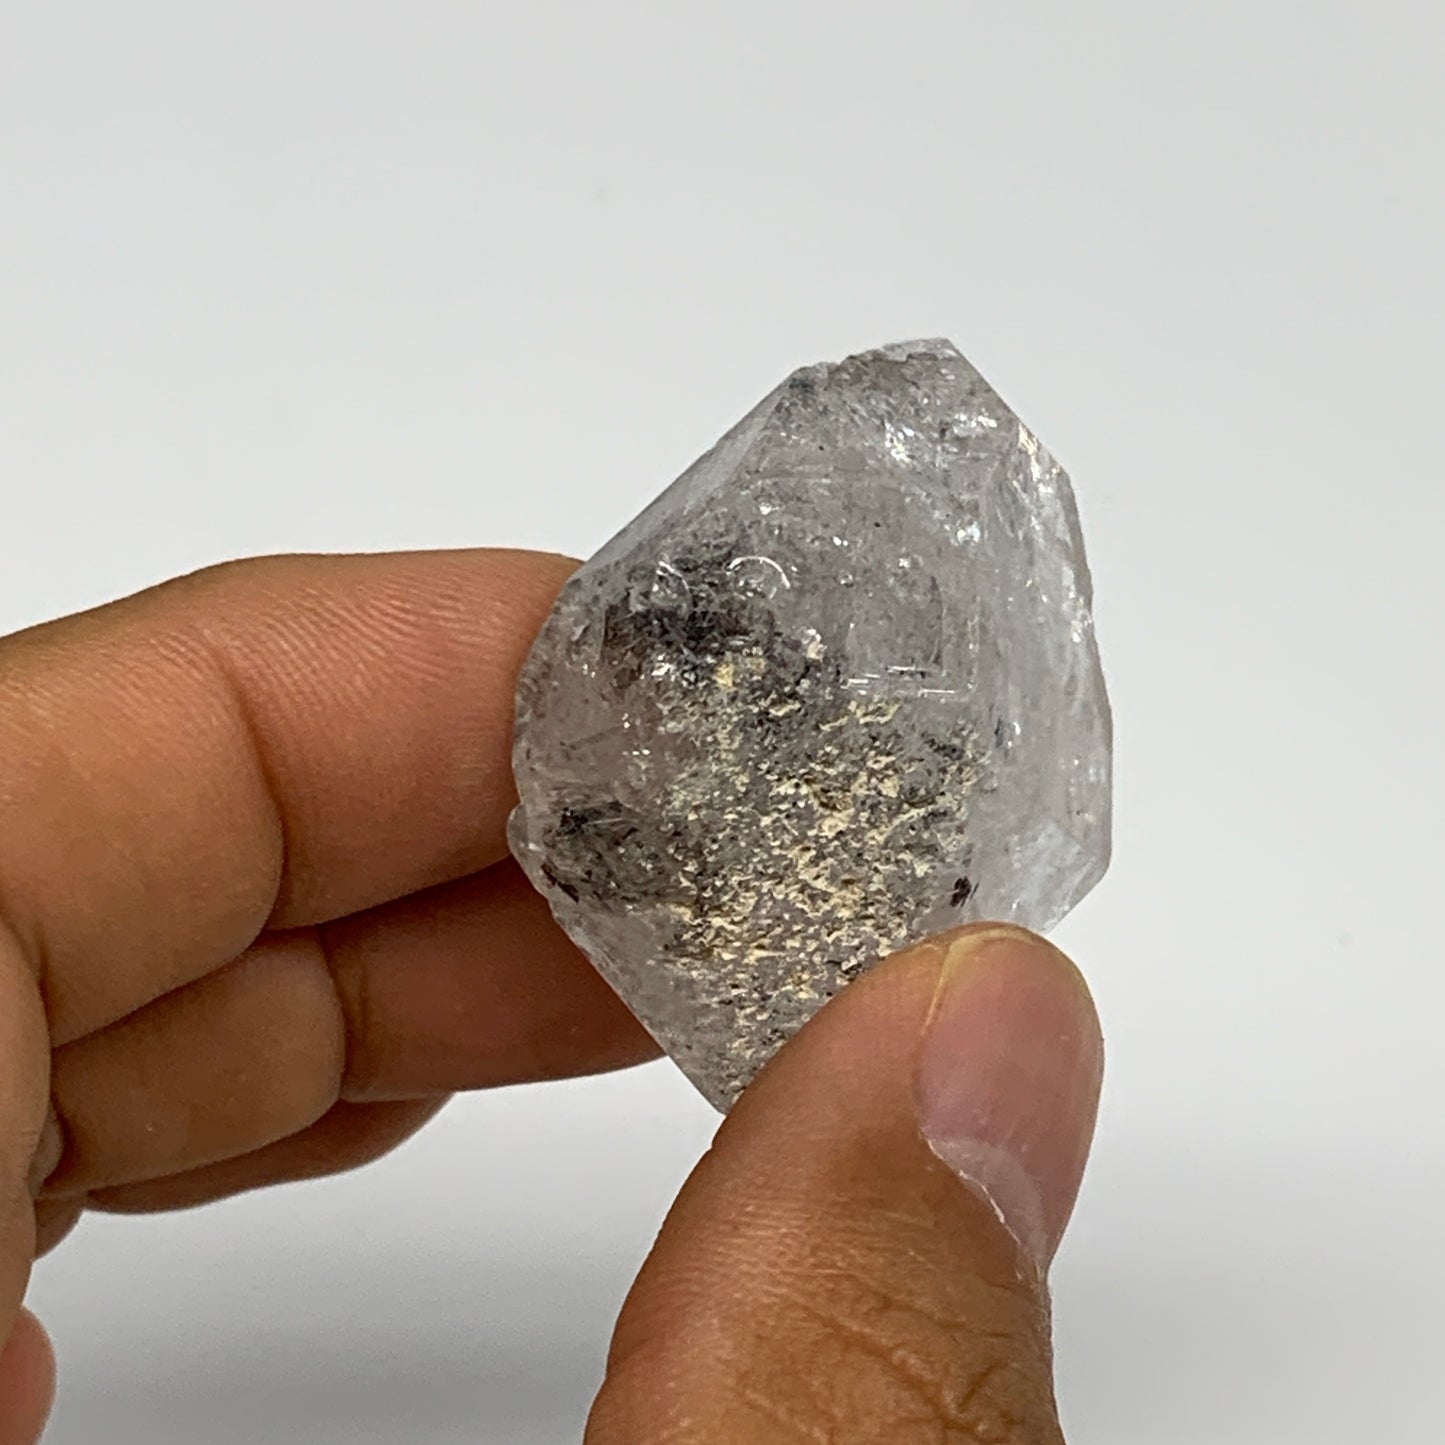 26.8g, 1.5"x1.2"x0.7", Natural Window Quartz Crystal Terminated @Pakistan,B27522